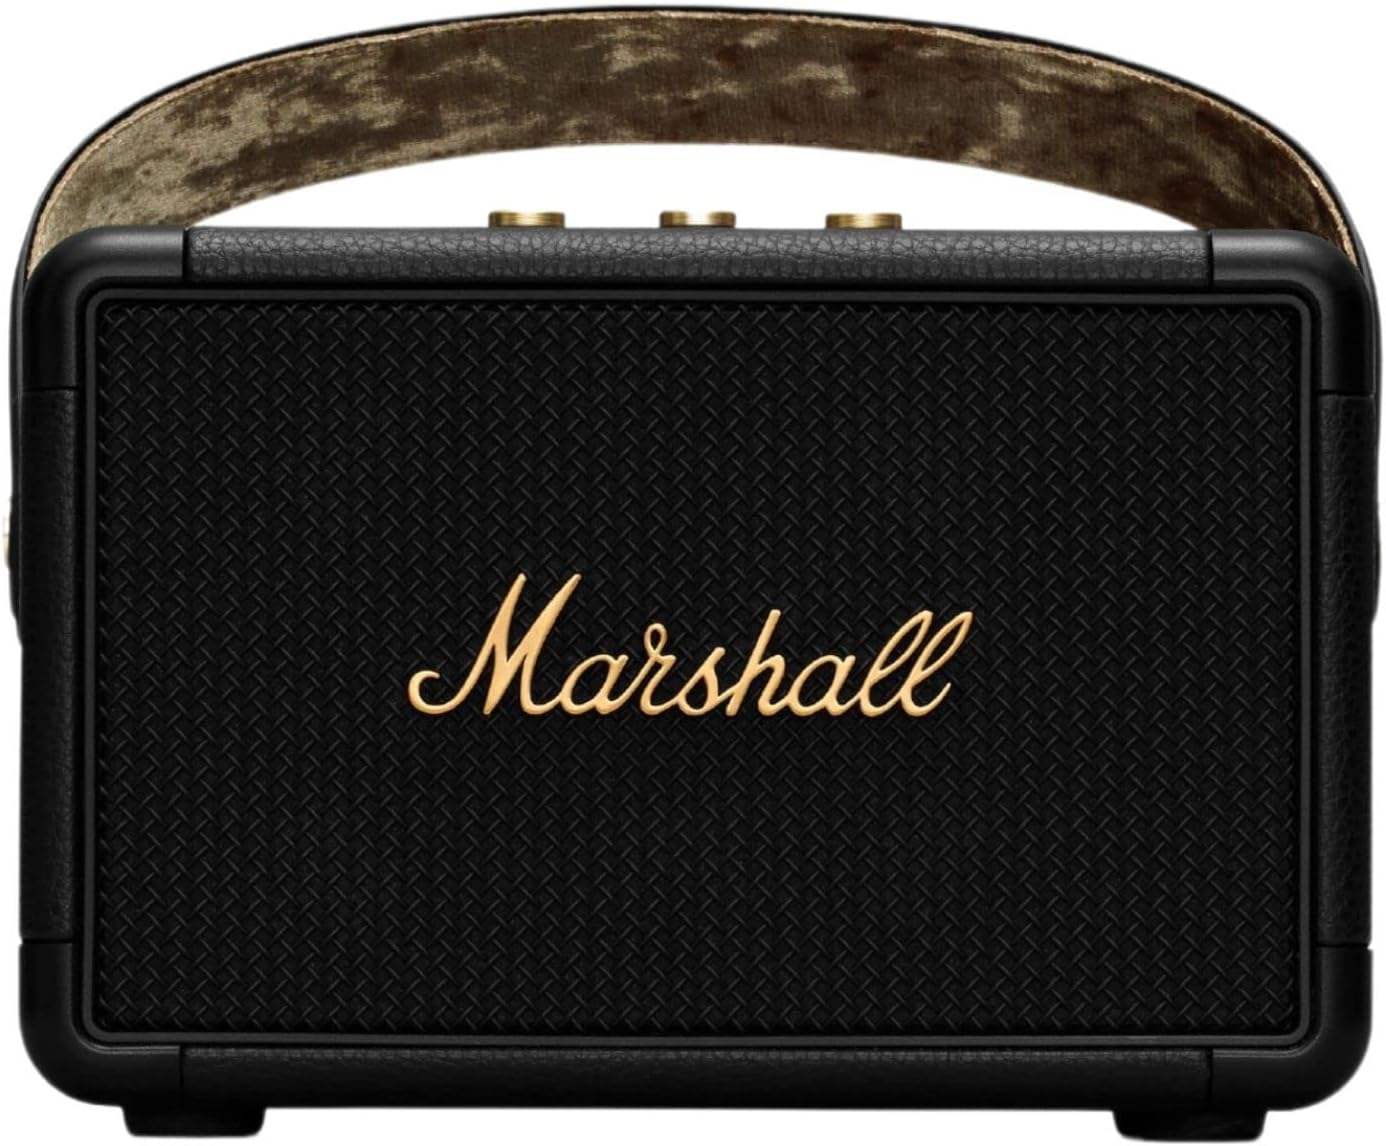 Marshall Kilburn II Bluetooth Portable Speaker - Black & Brass